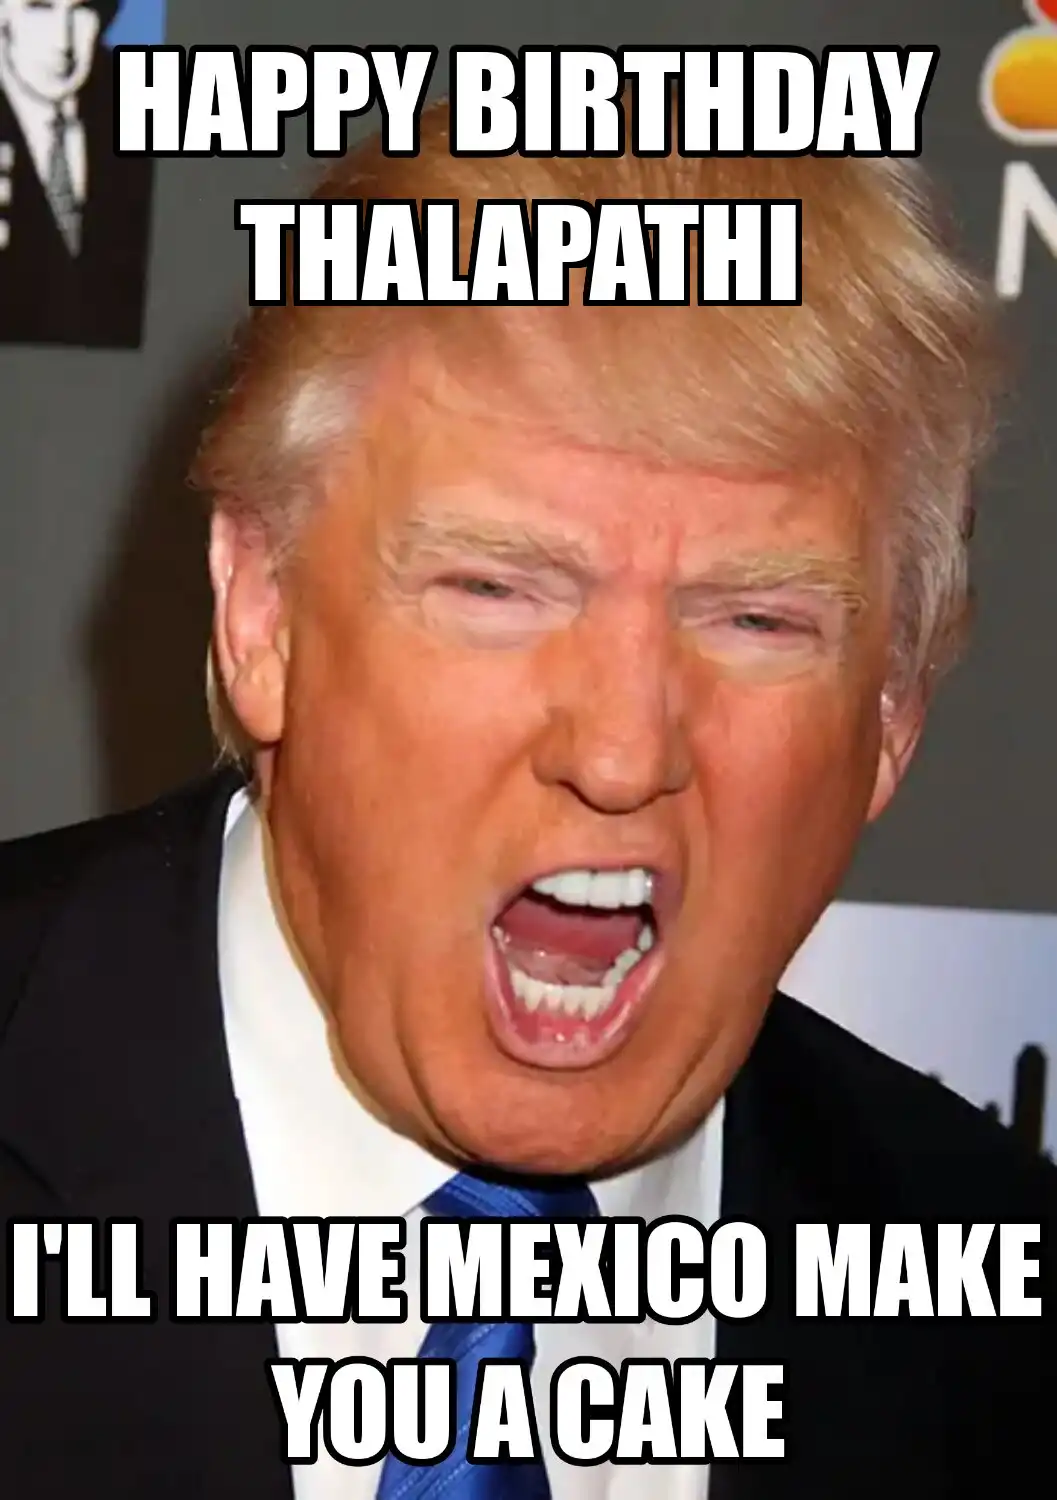 Happy Birthday Thalapathi Mexico Make You A Cake Meme